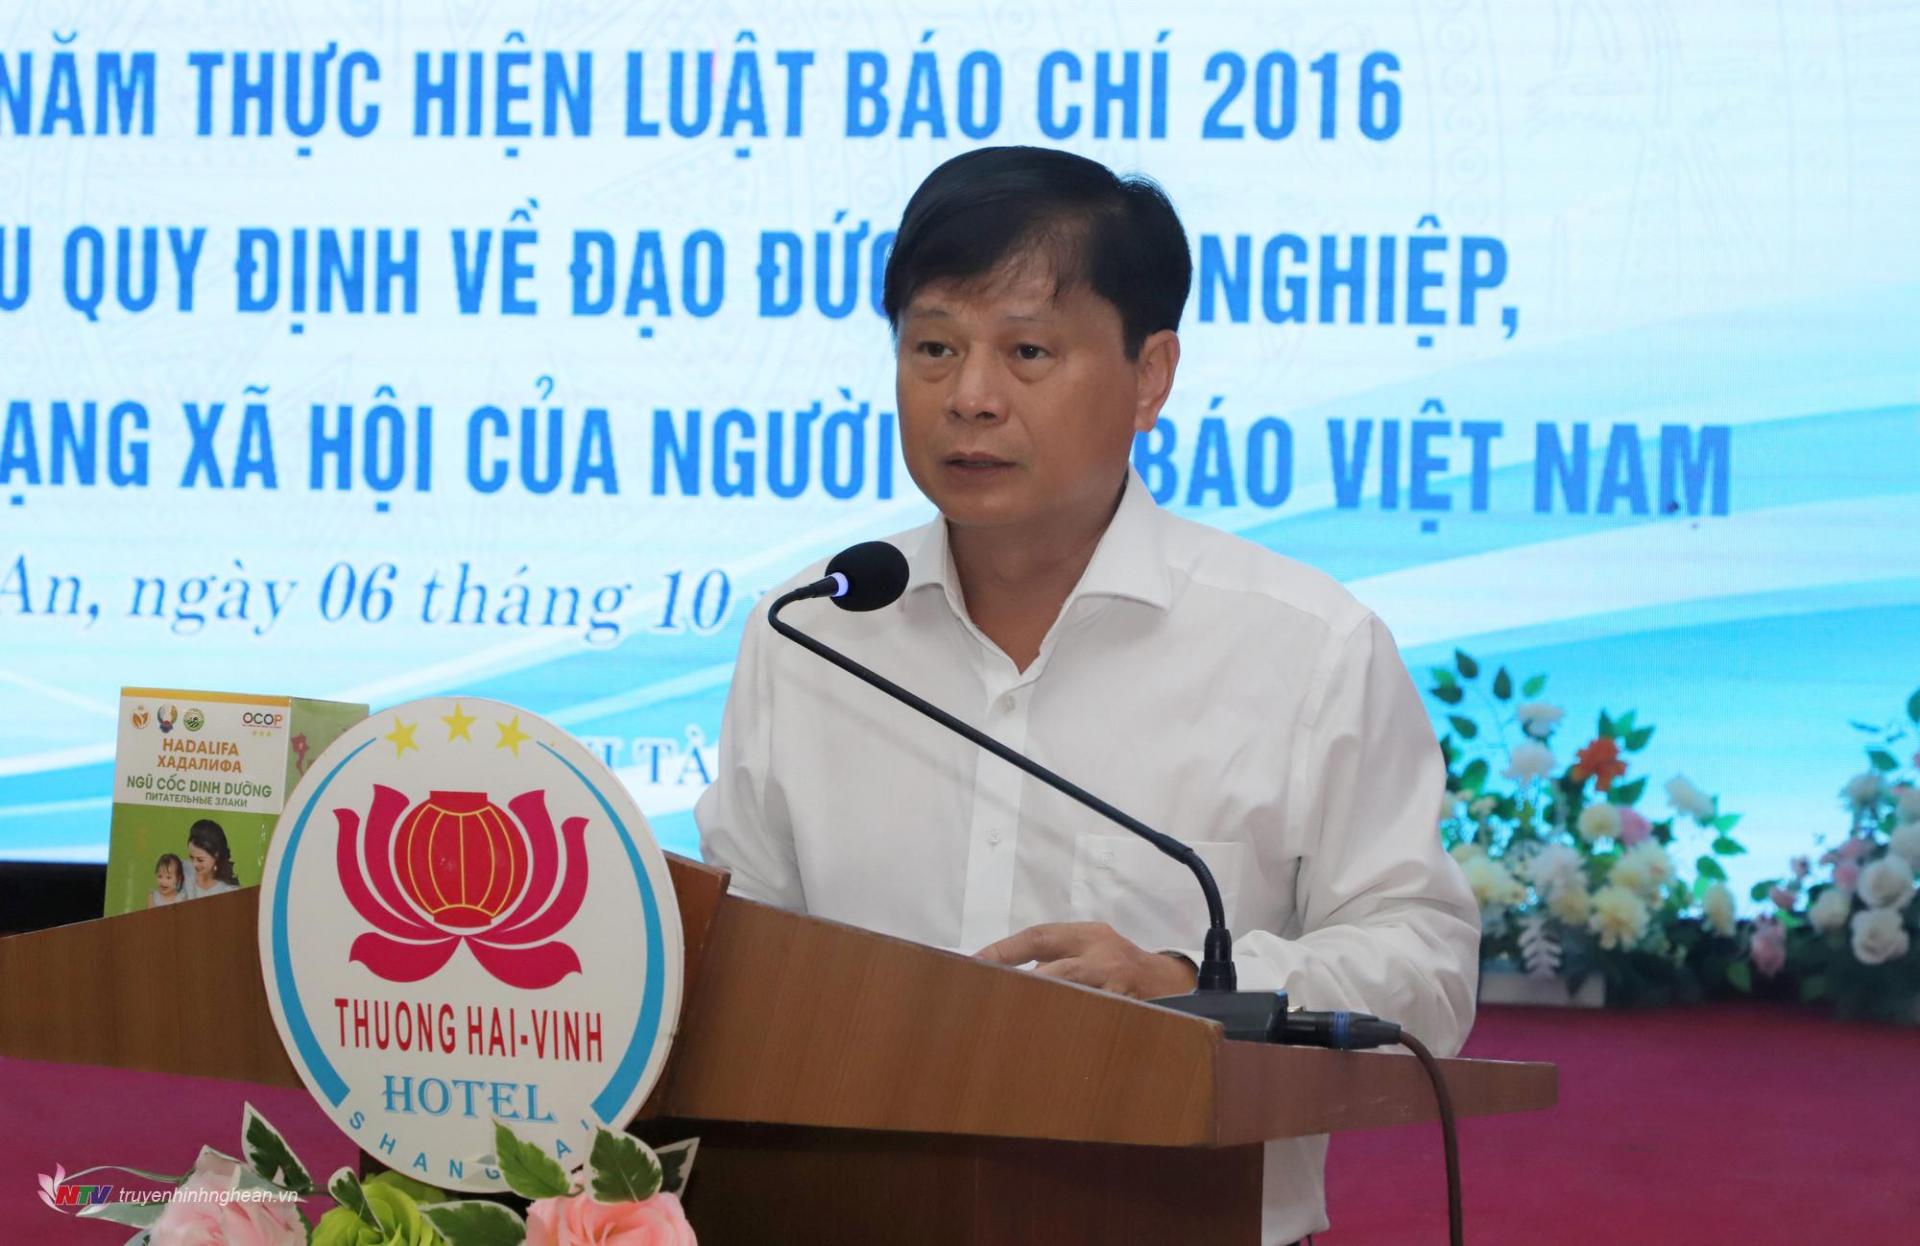 Ông Trần Trọng Dũng - Phó Chủ tịch Hội Nhà báo Việt Nam dự và phát biểu tại Hội nghị.